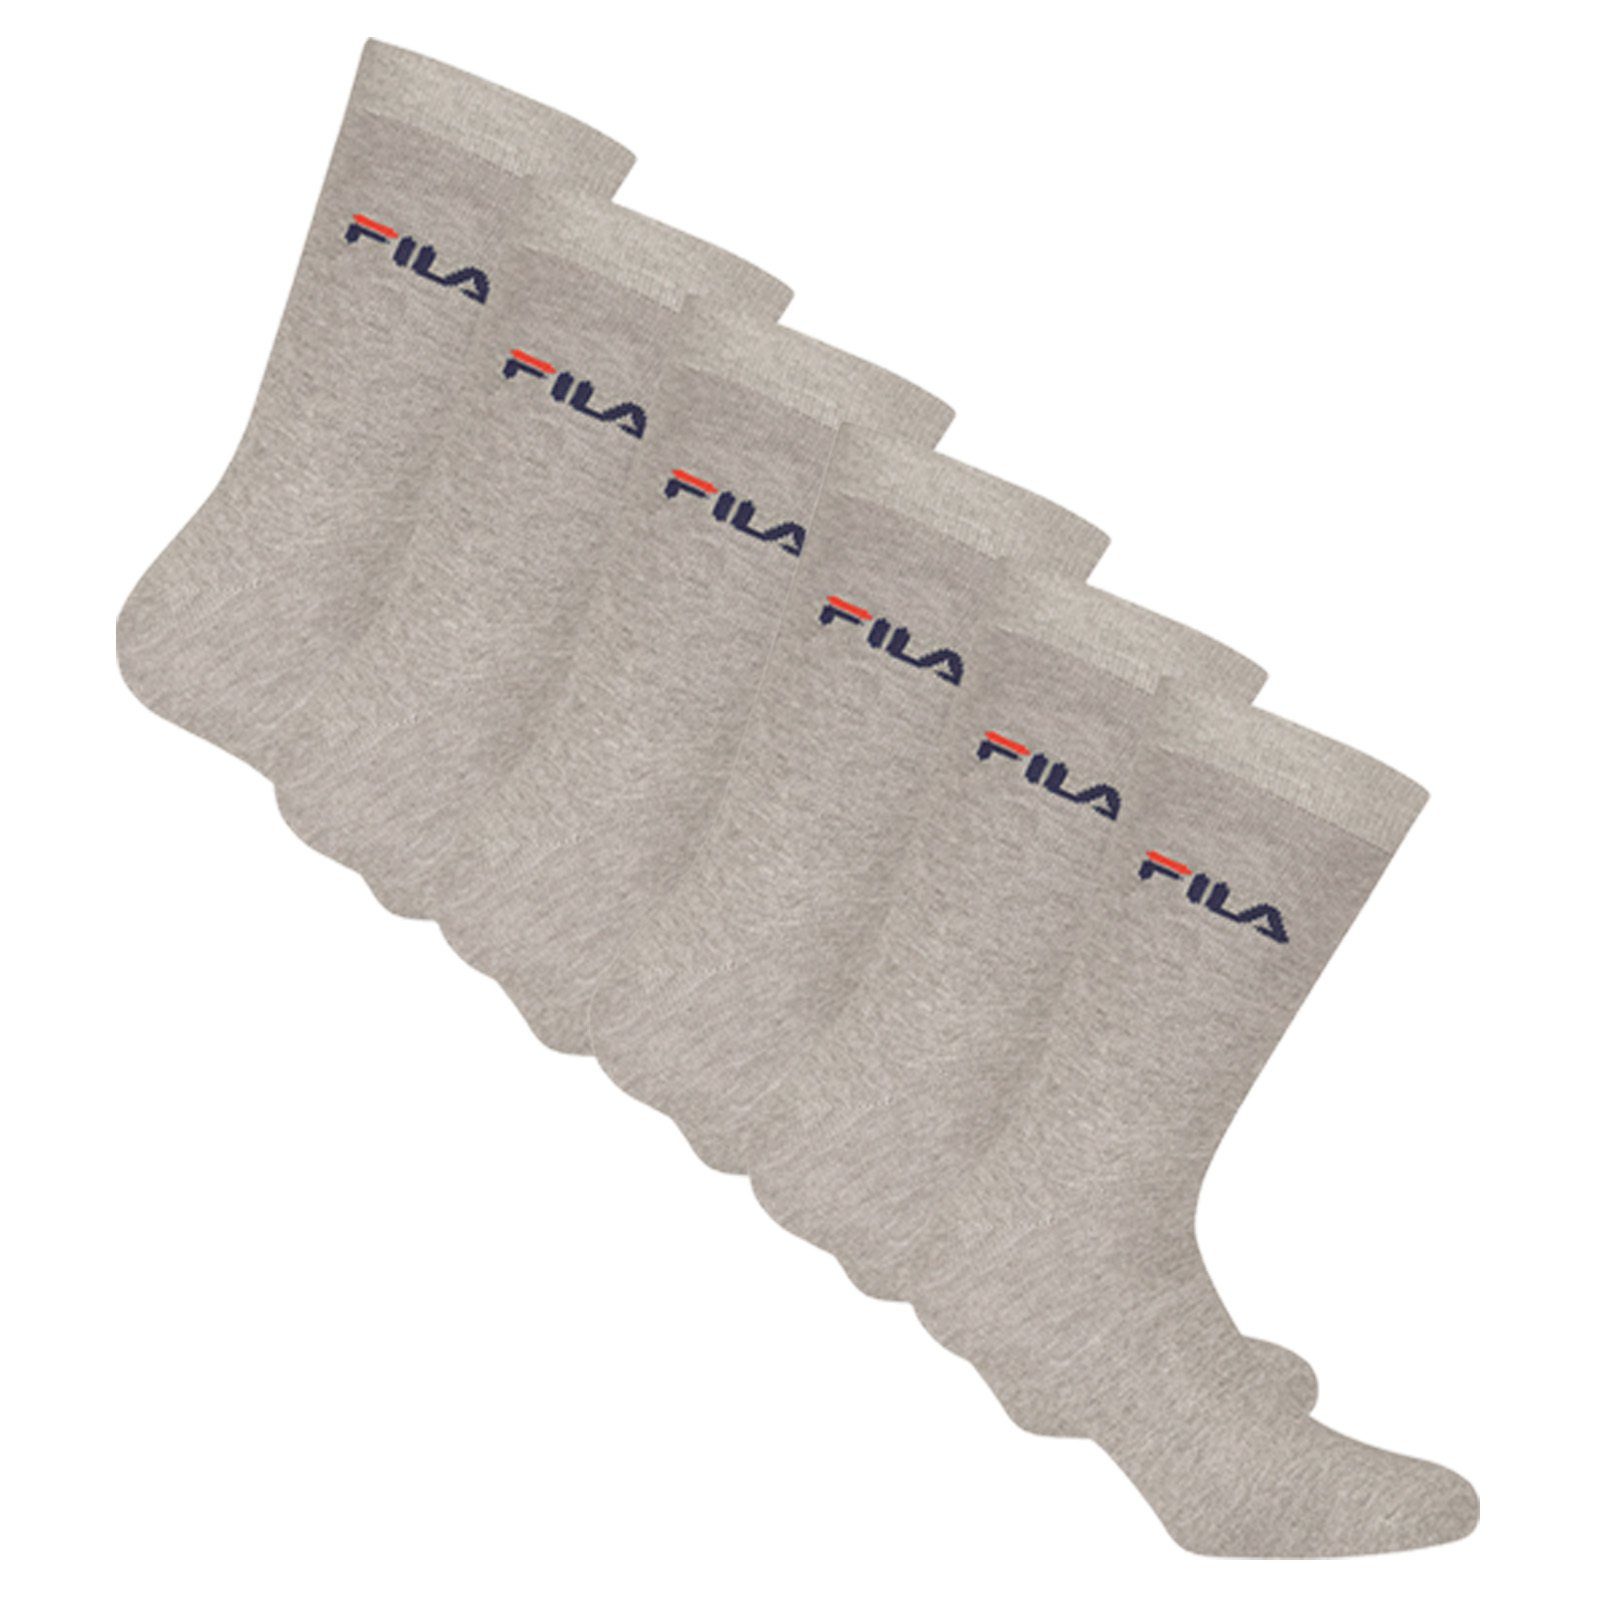 Fila Sportsocken Unisex Socken, 6er Pack - Crew Socks, Strümpfe, Hoher  Tragekomfort, beste Qualität